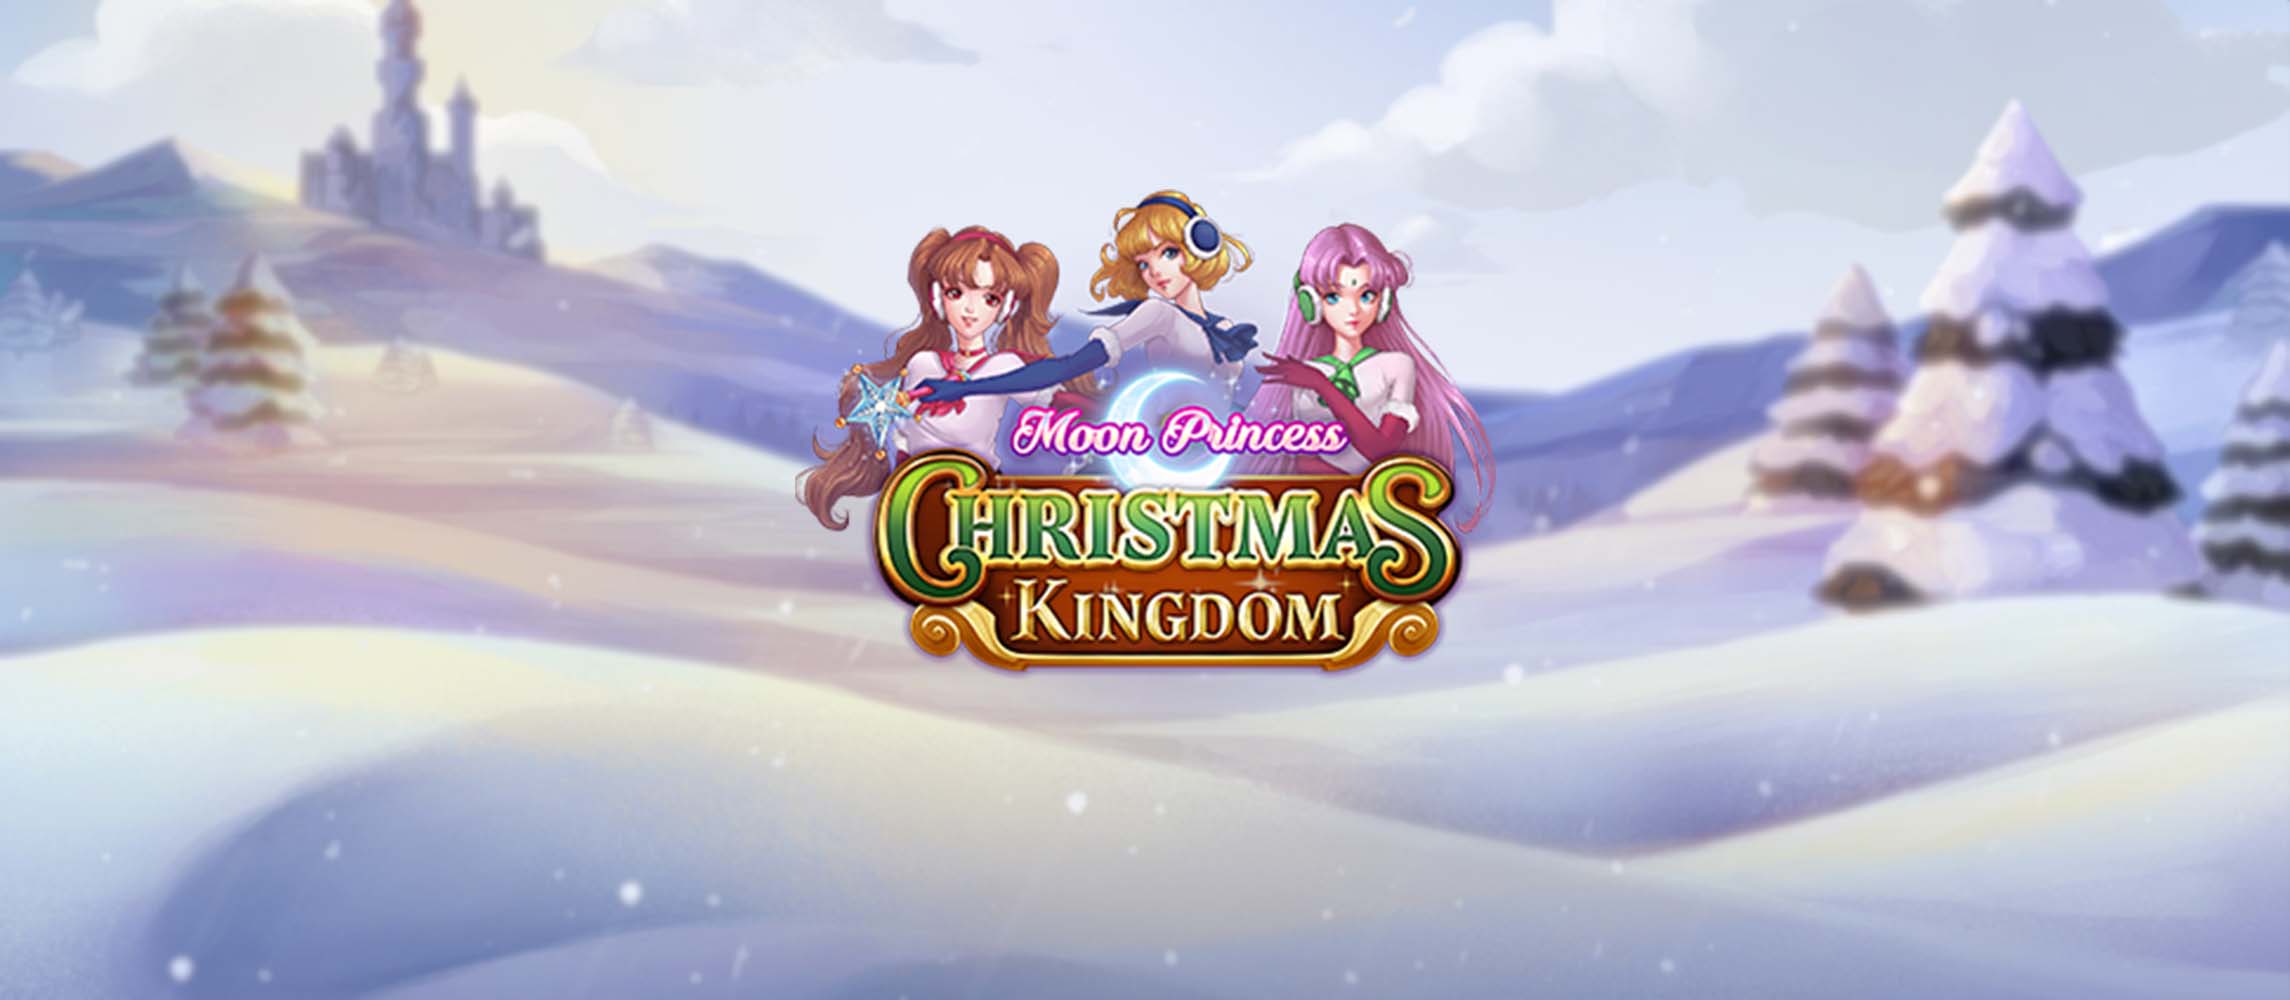 Moon Princess - Christmas Kingdom by Play'n GO